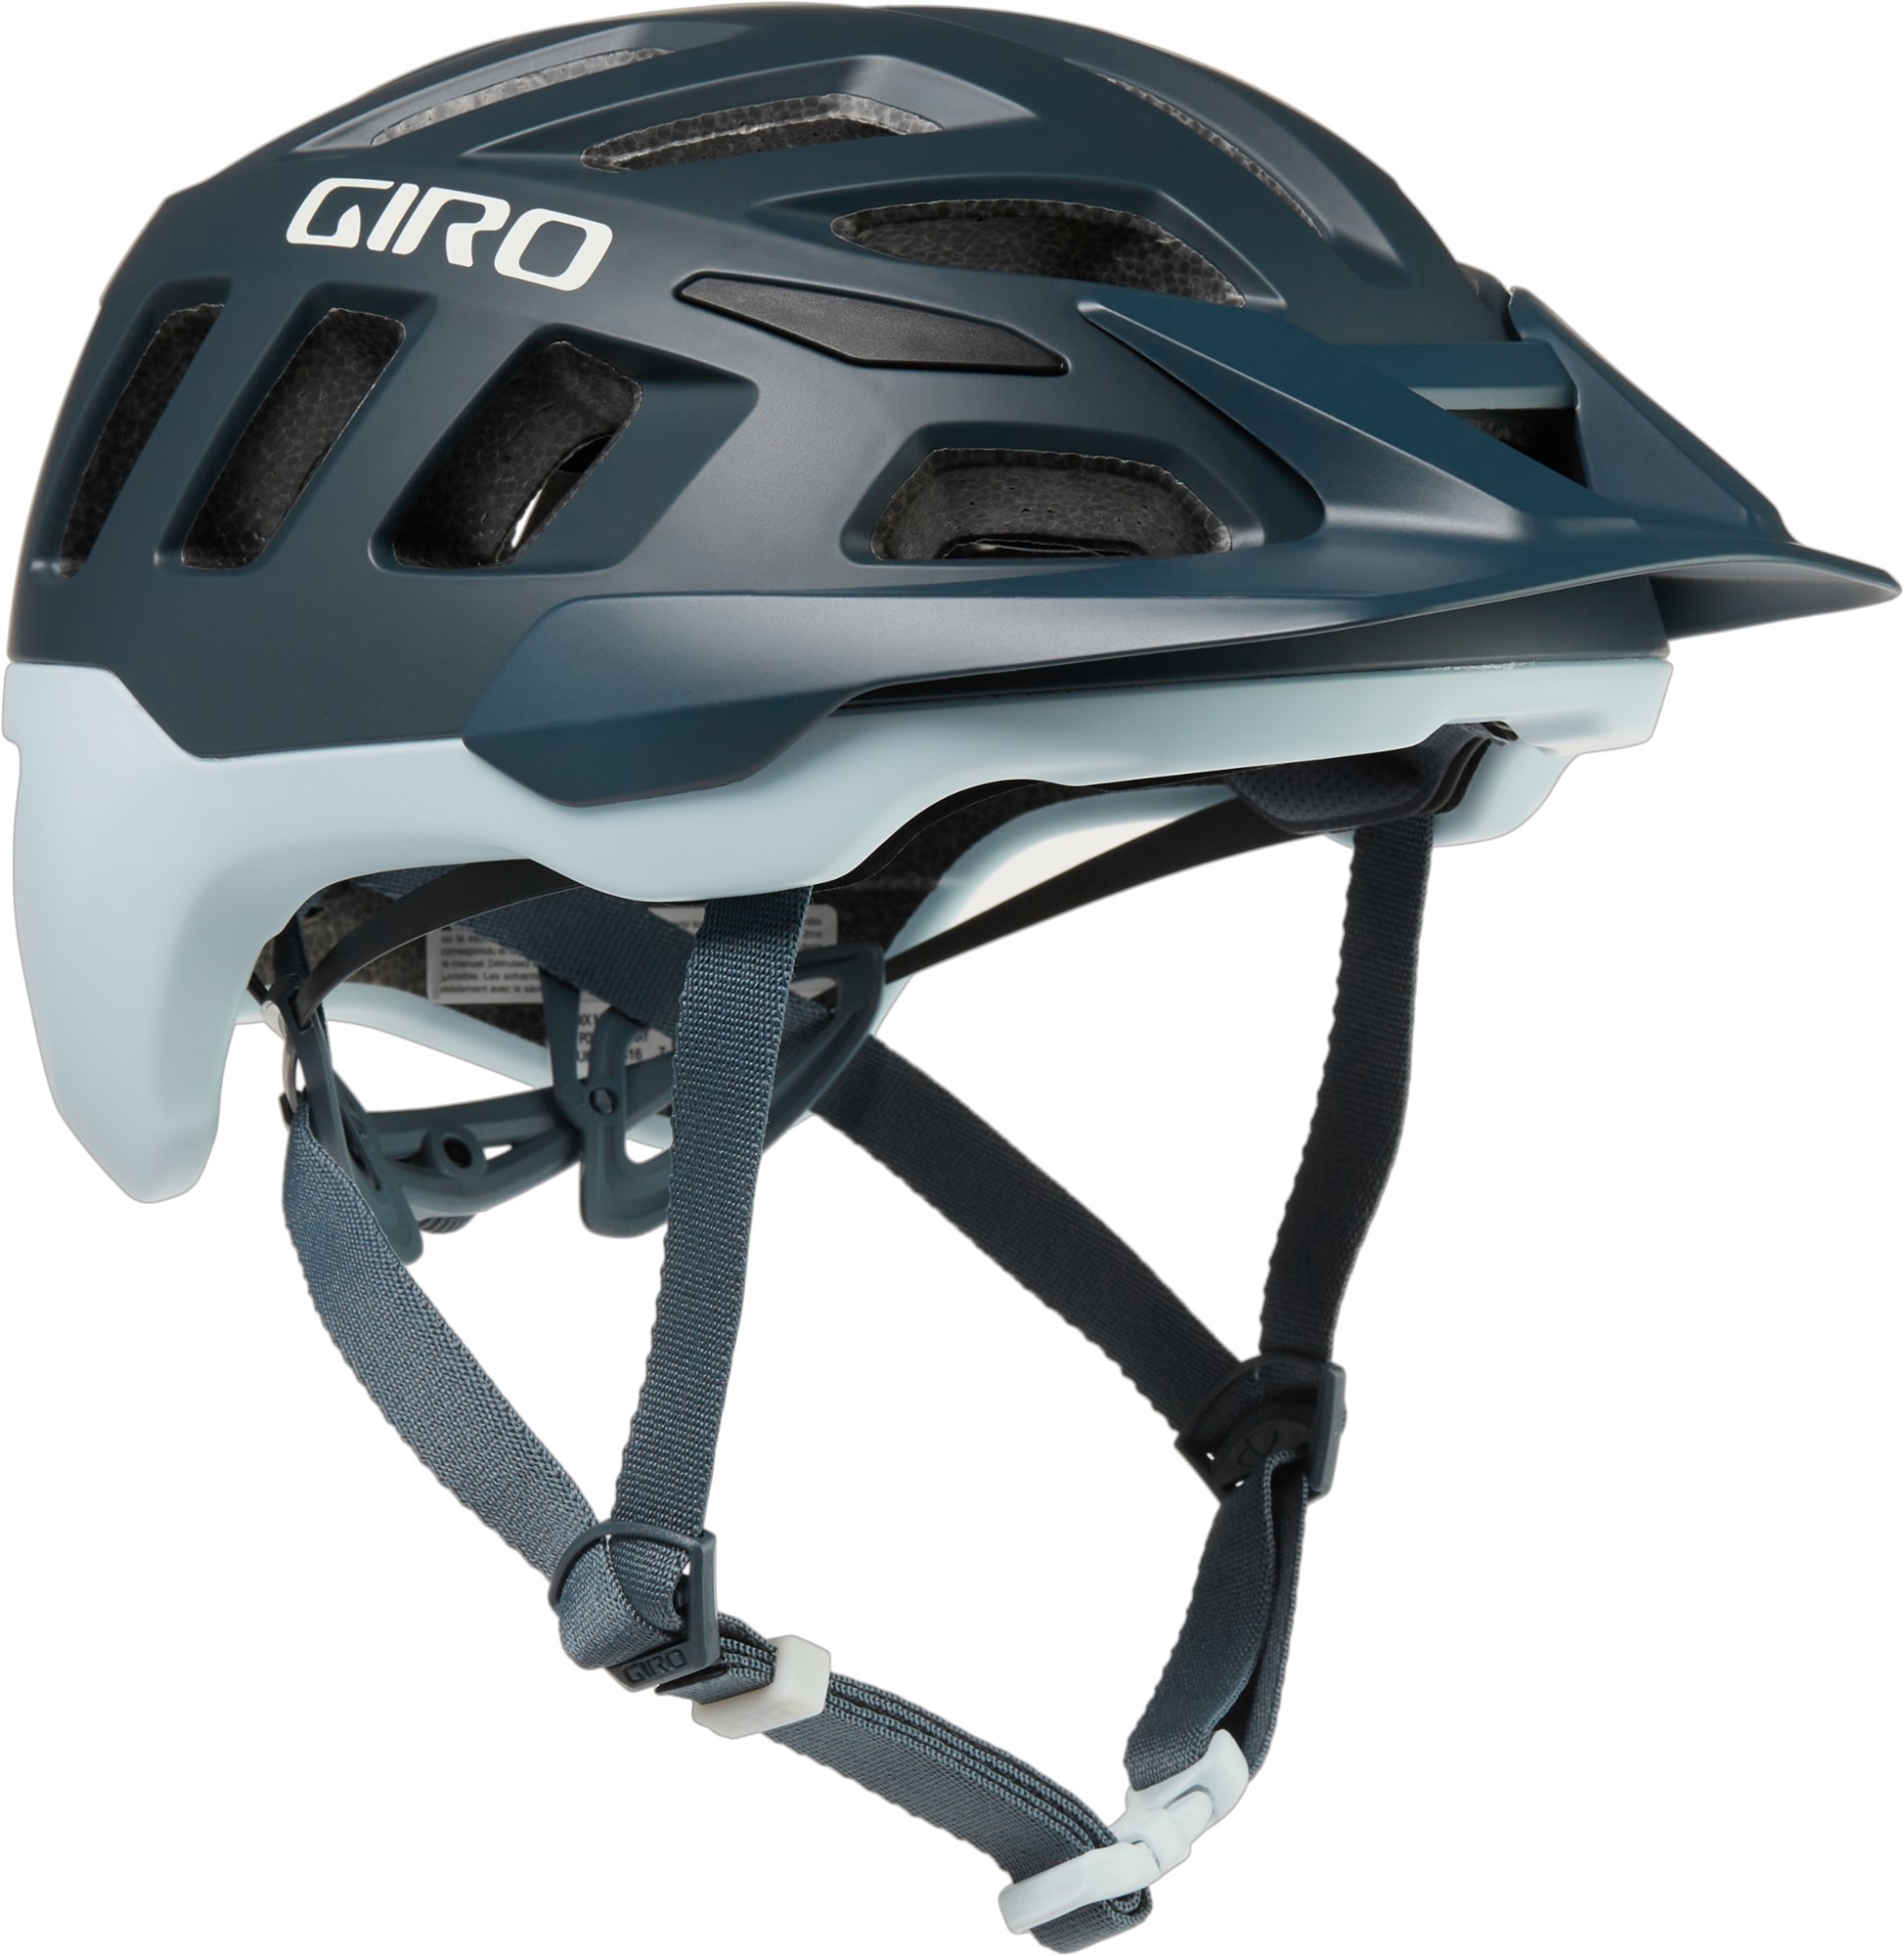 Велосипедный шлем Radix MIPS Giro, серый